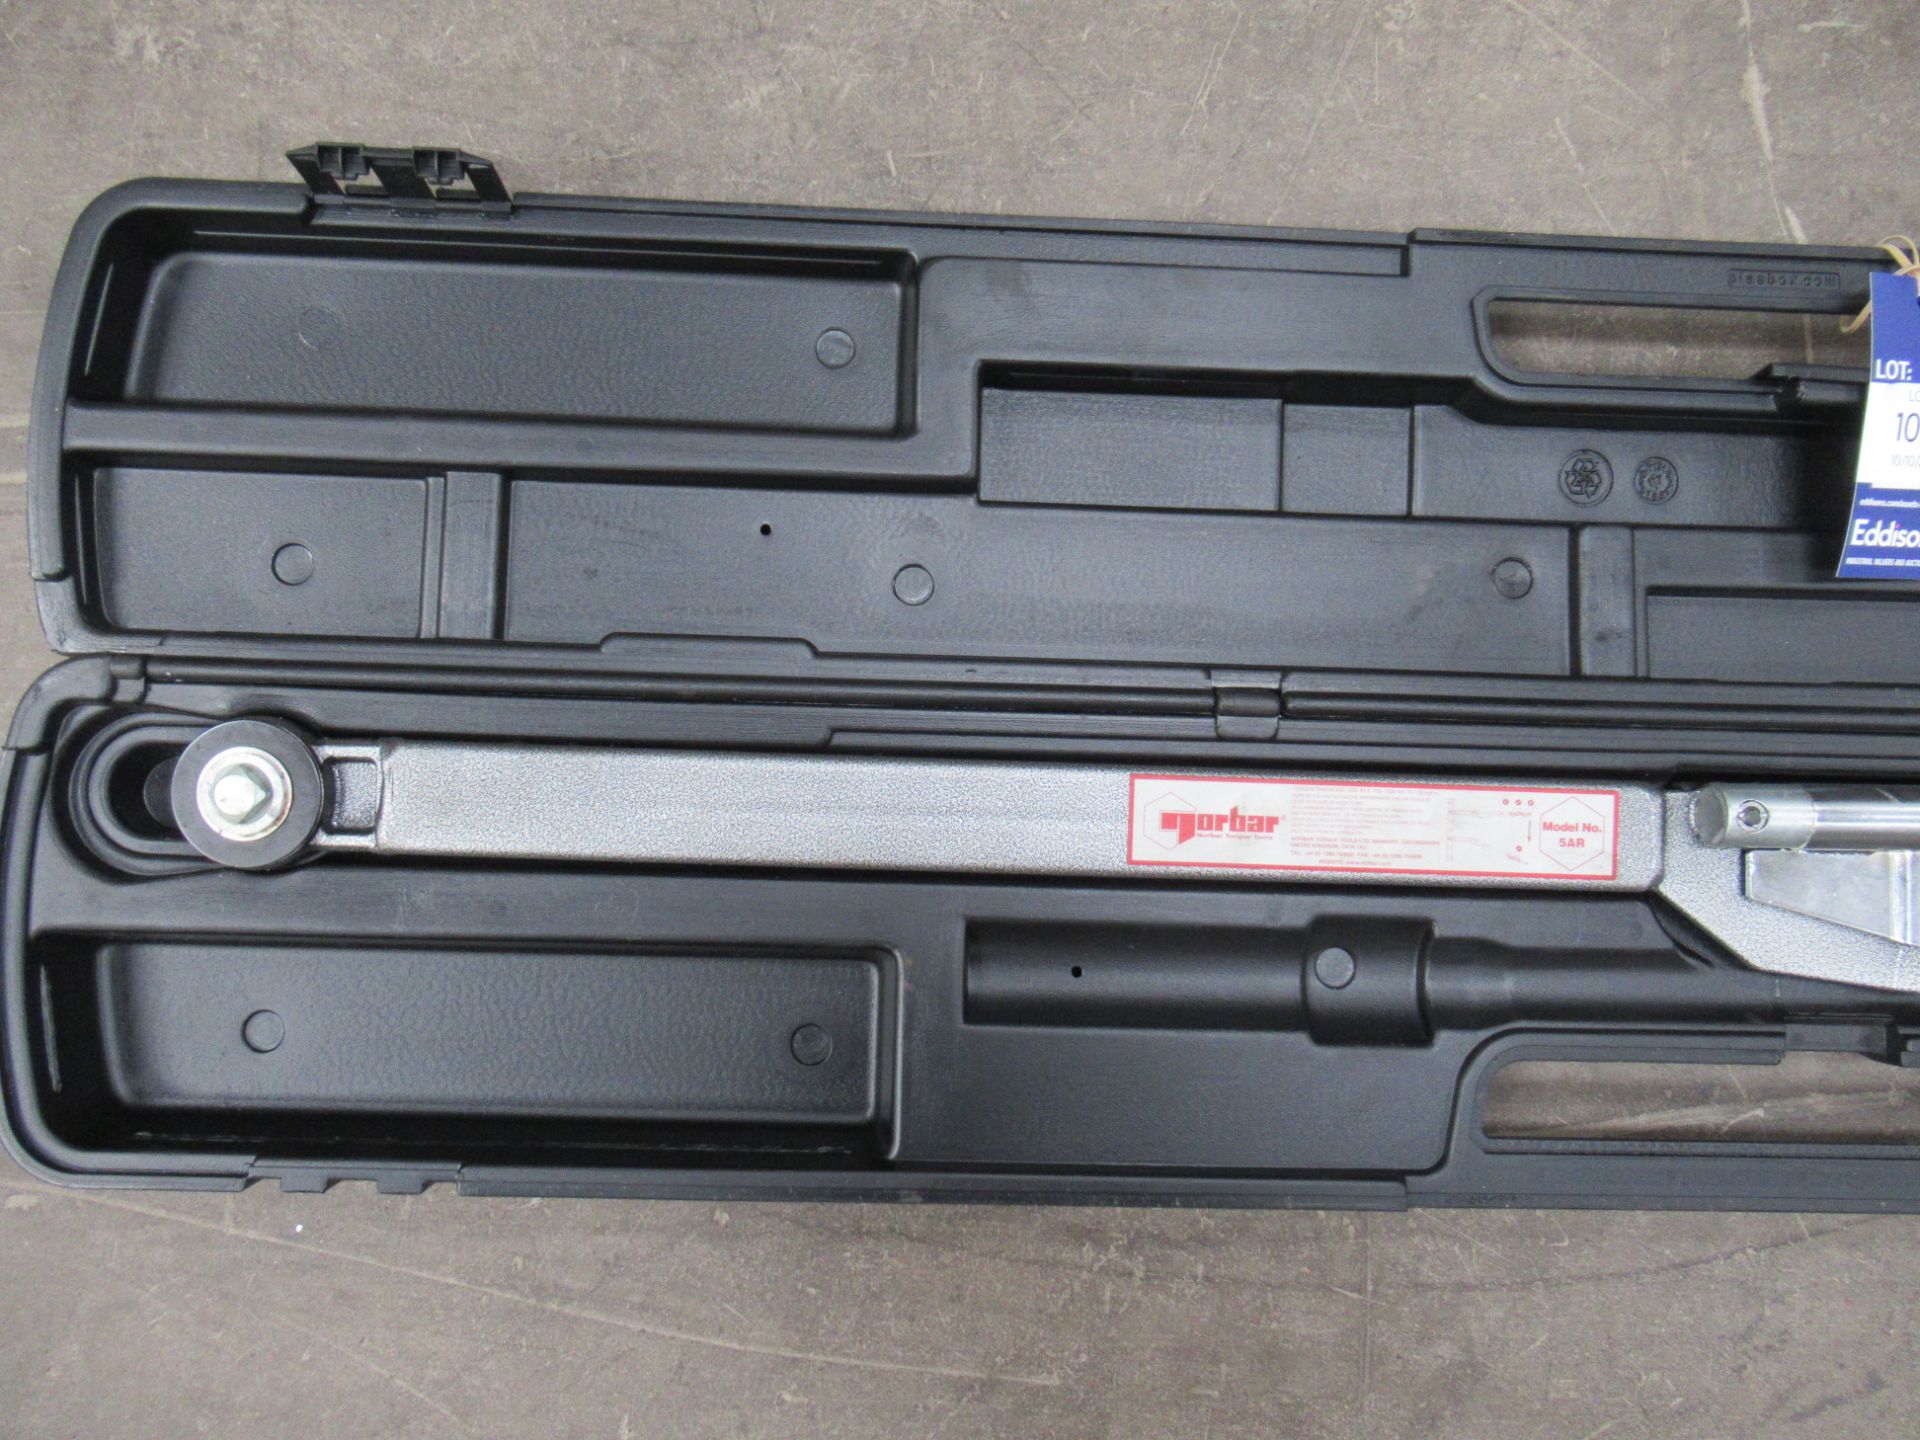 Norbar 5AR Torque Wrench in Carry Case - Bild 2 aus 7